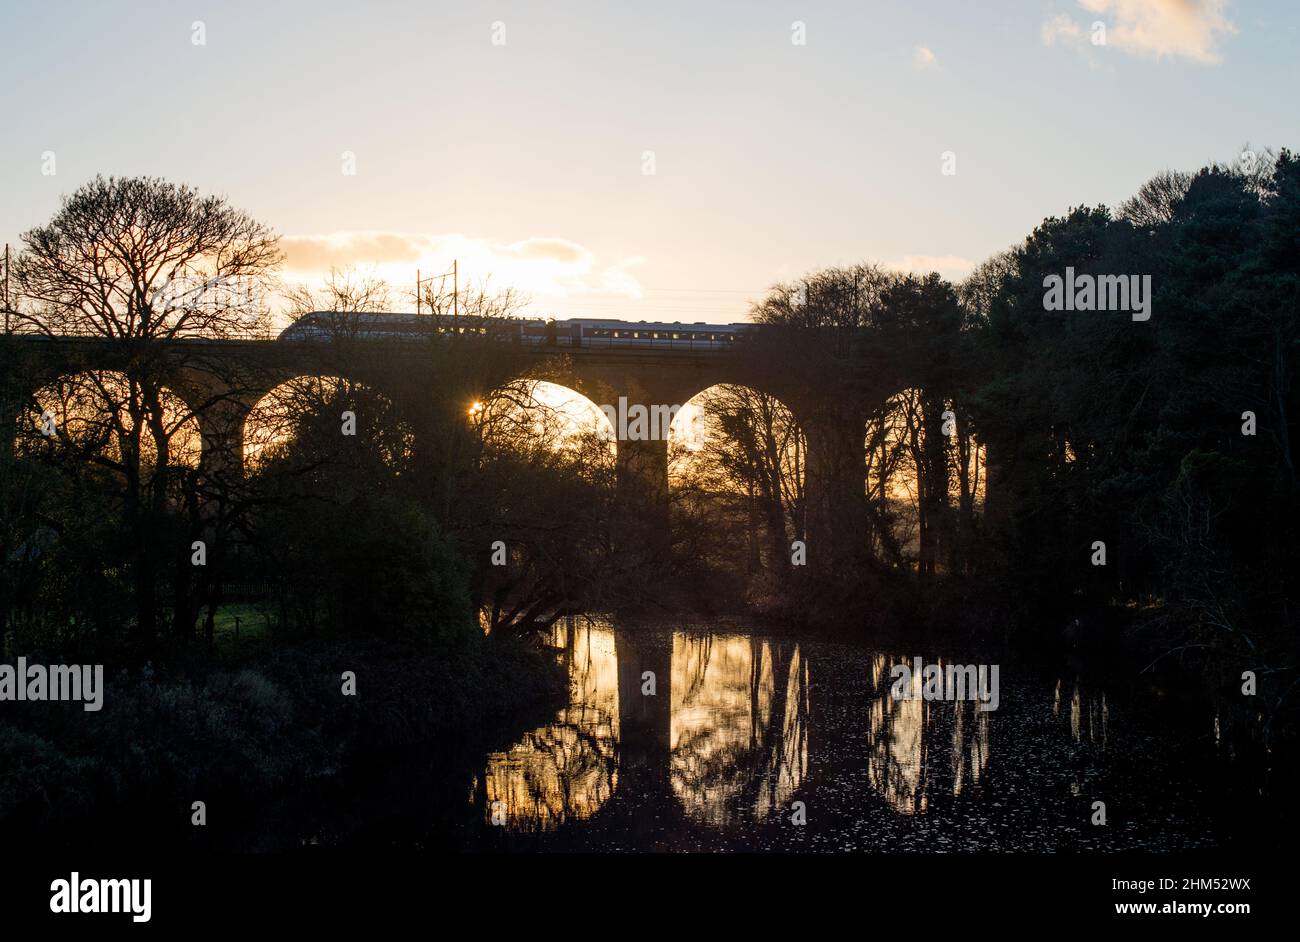 El sol mira a través de un arco de un viaducto ferroviario al atardecer mientras un tren acelera por encima Foto de stock